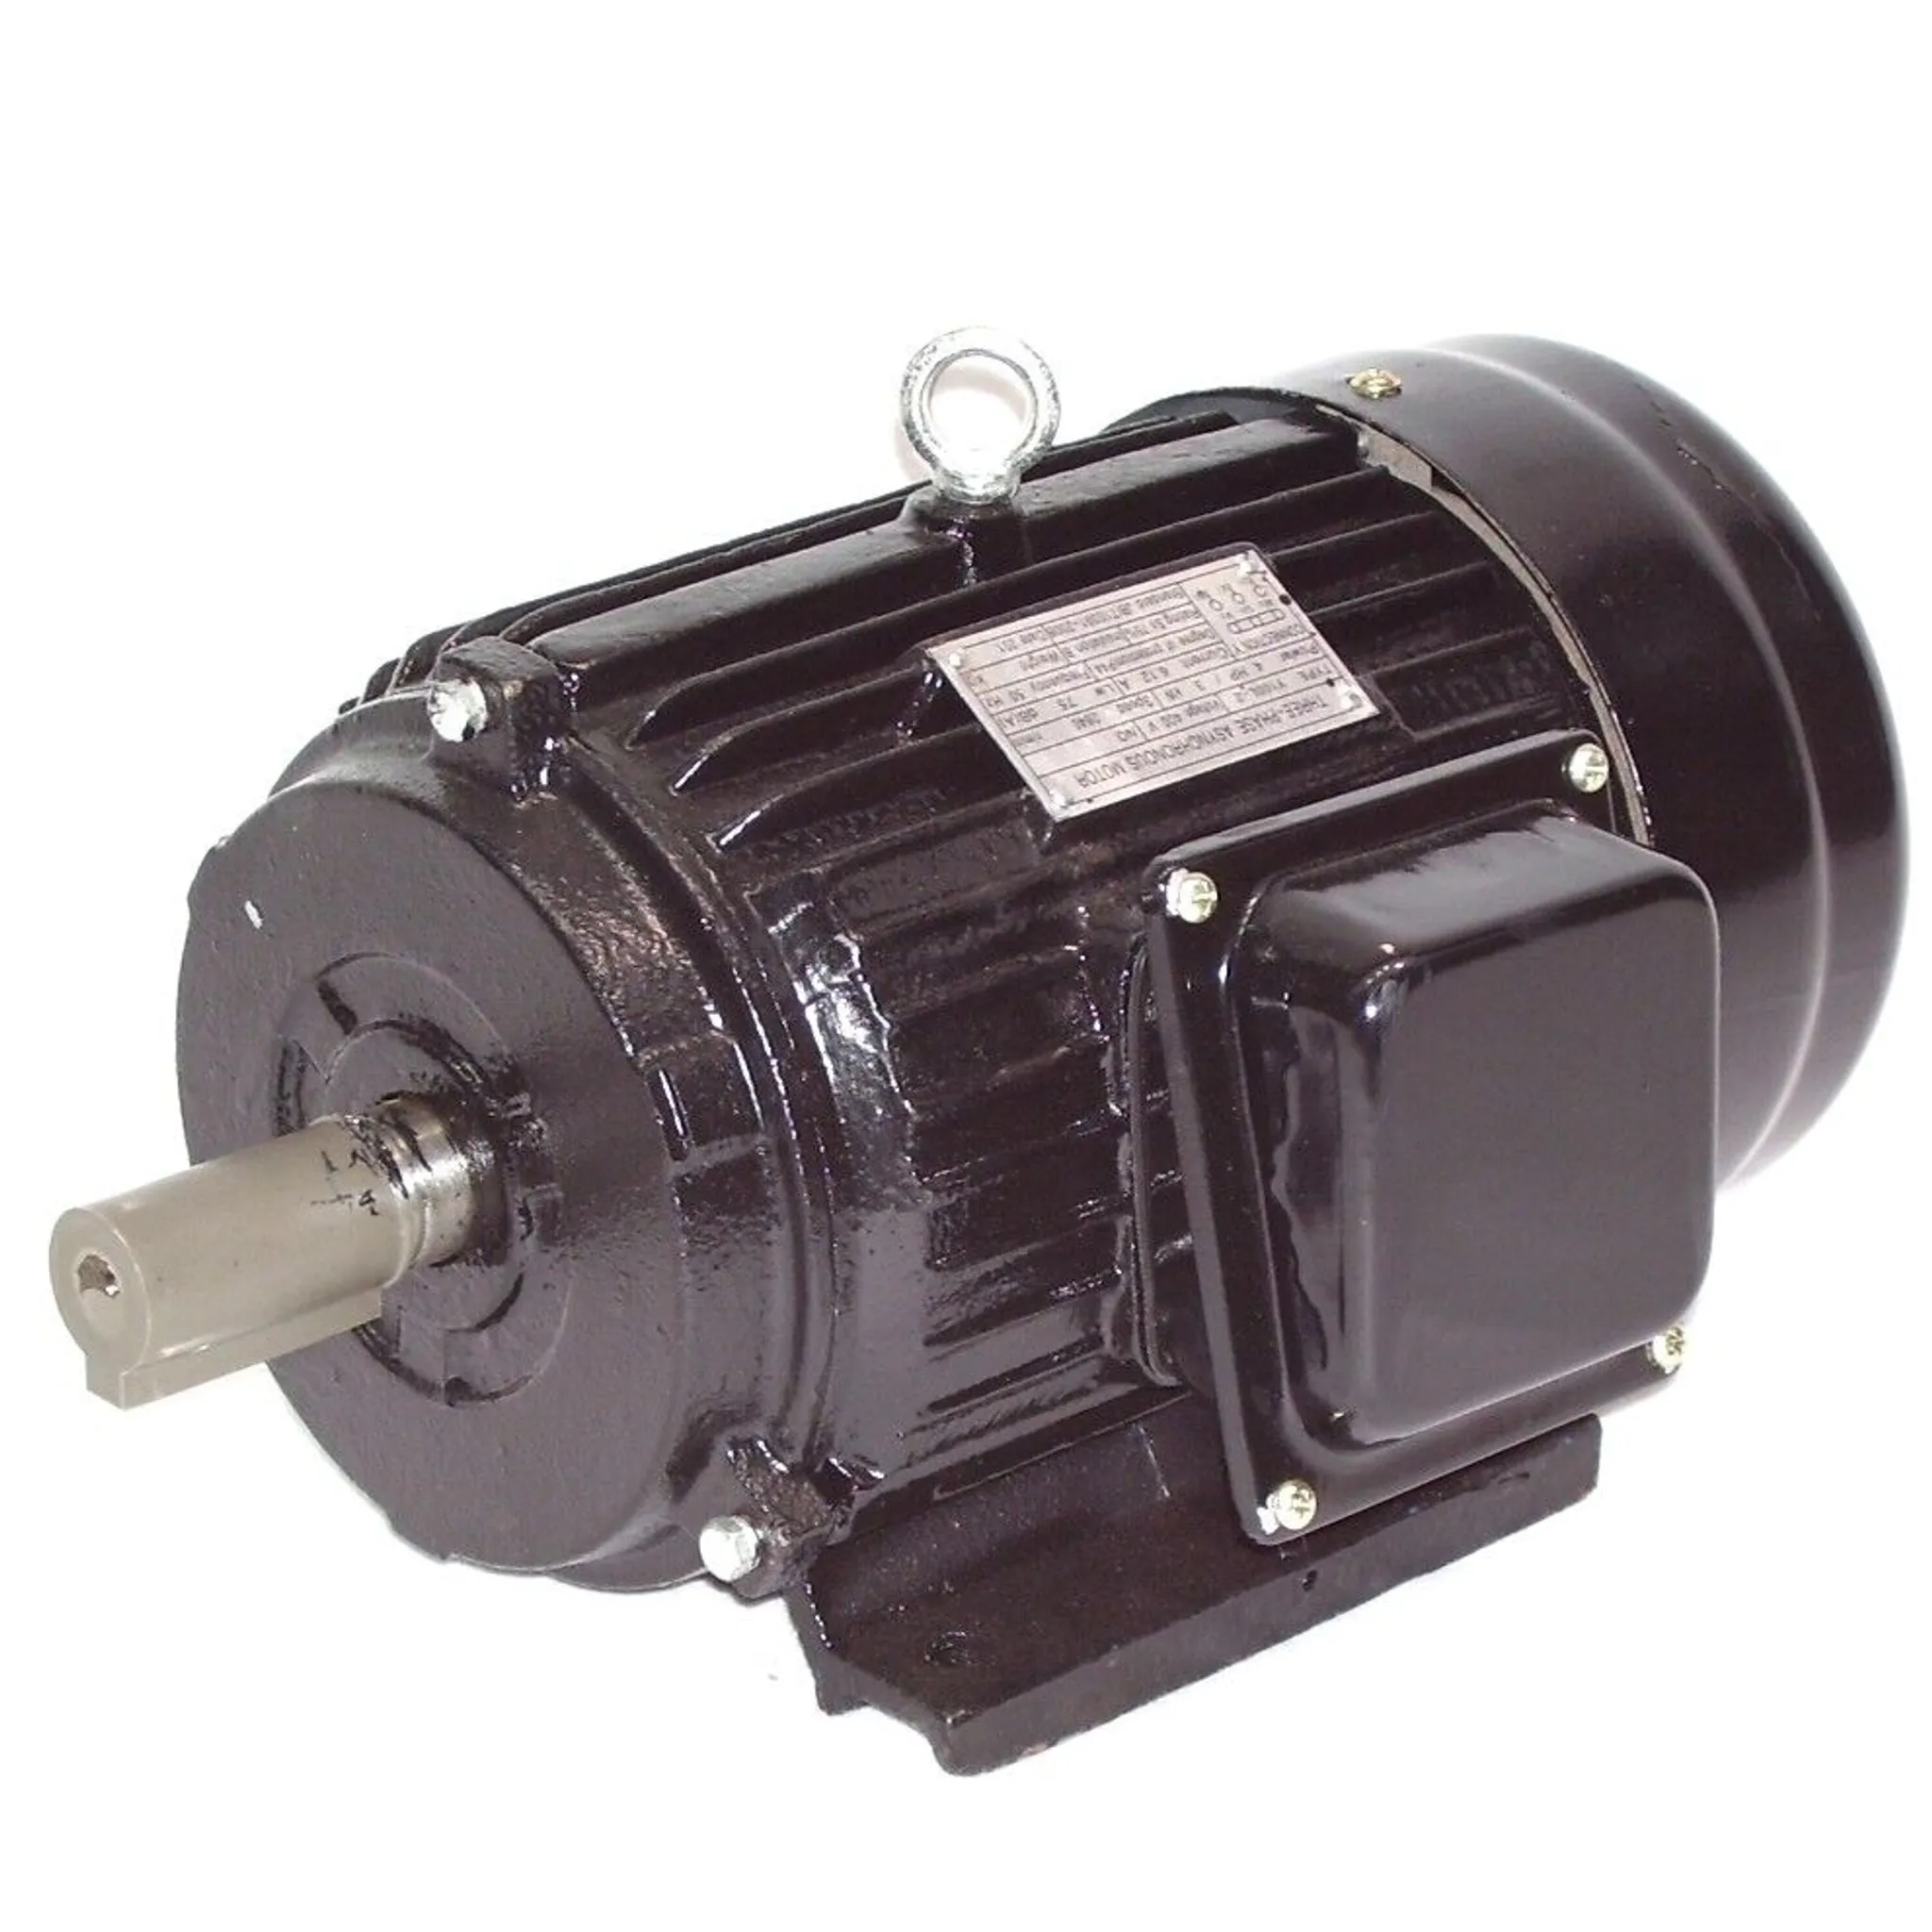 Elektromotor 400V 2-pol. 3-phas. 3kW 4PS Asynchronmotor Drehstrommotor  Aluminium